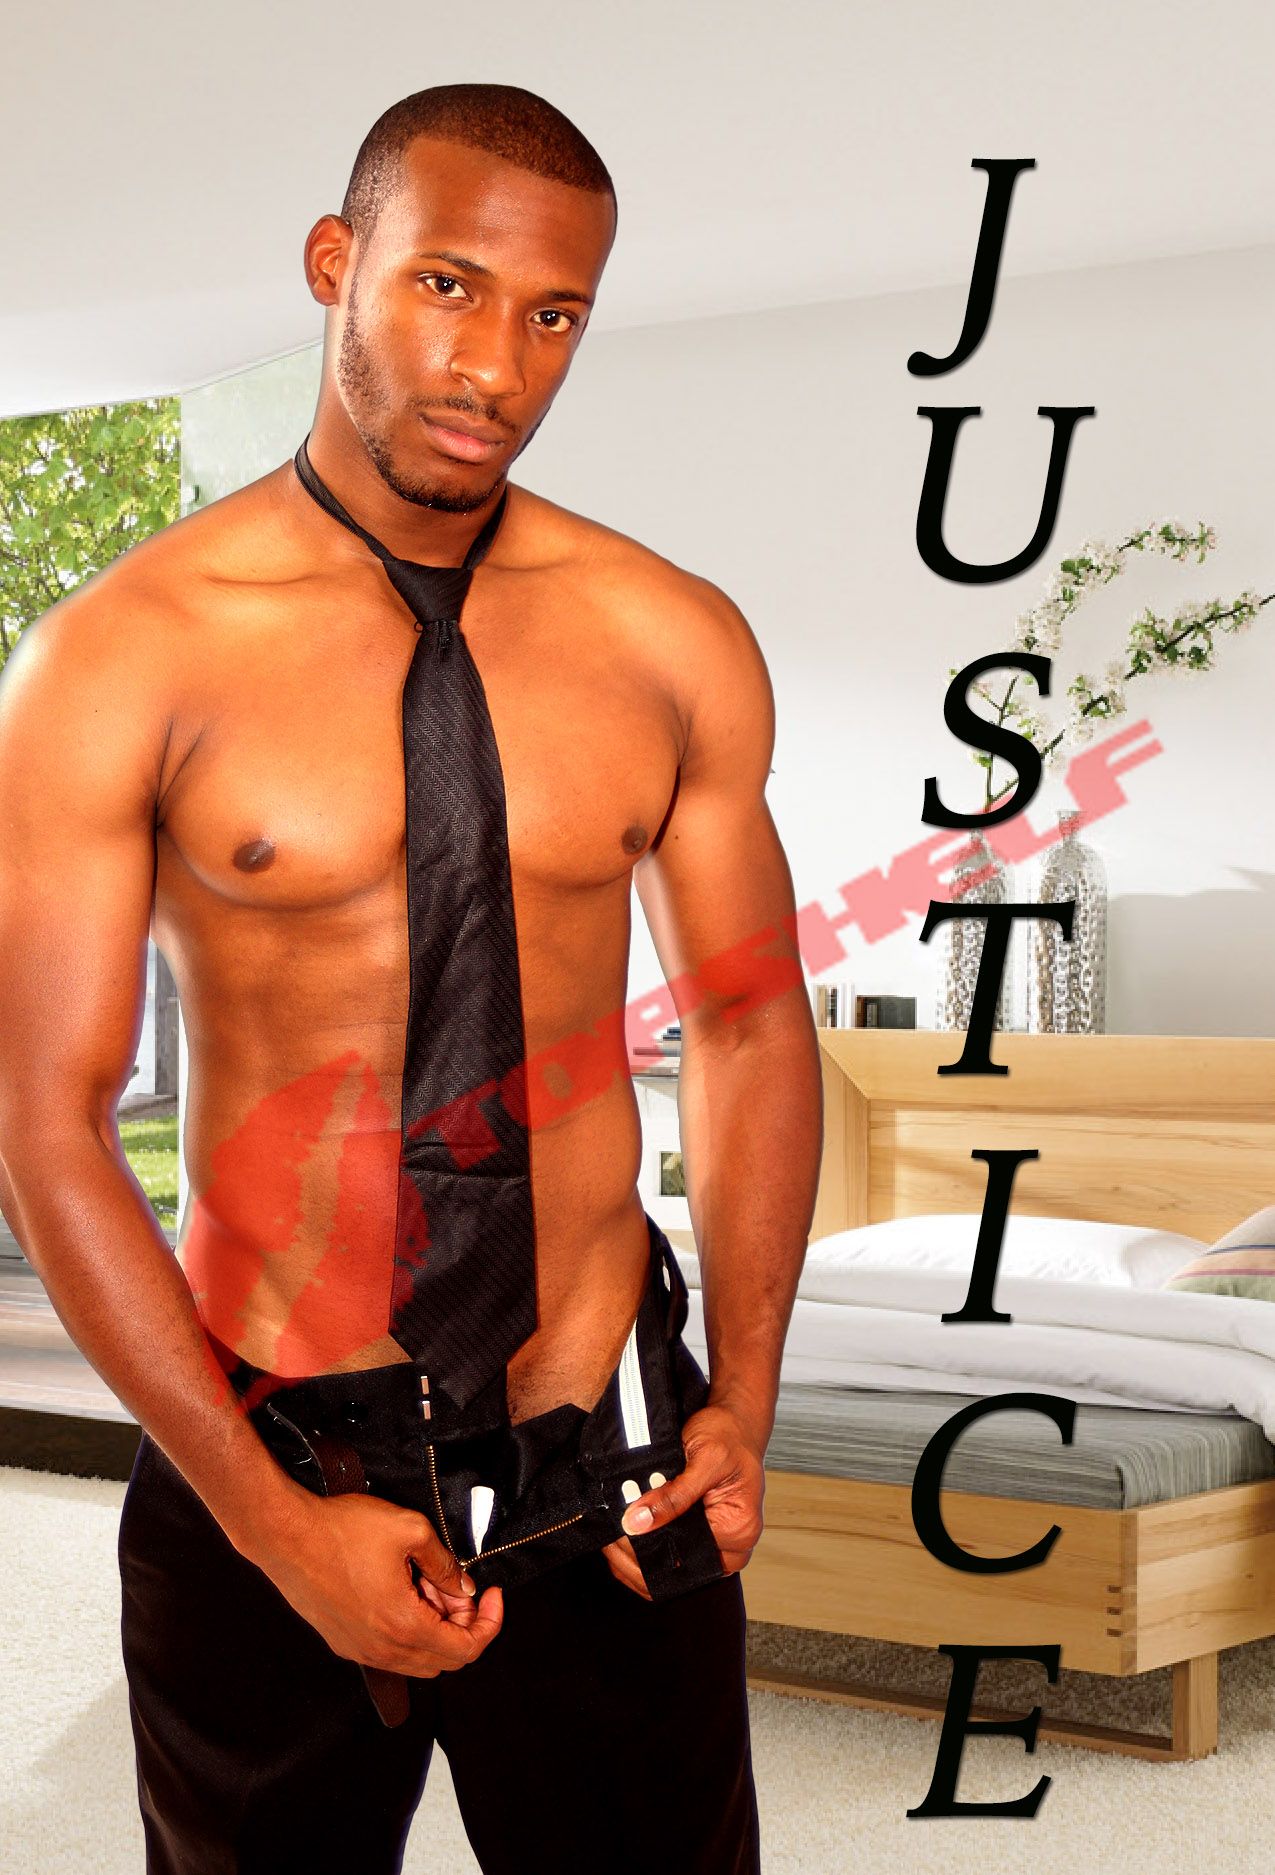 justice-2-28aa9990 Justice Atlanta Male Stripper in Georgia